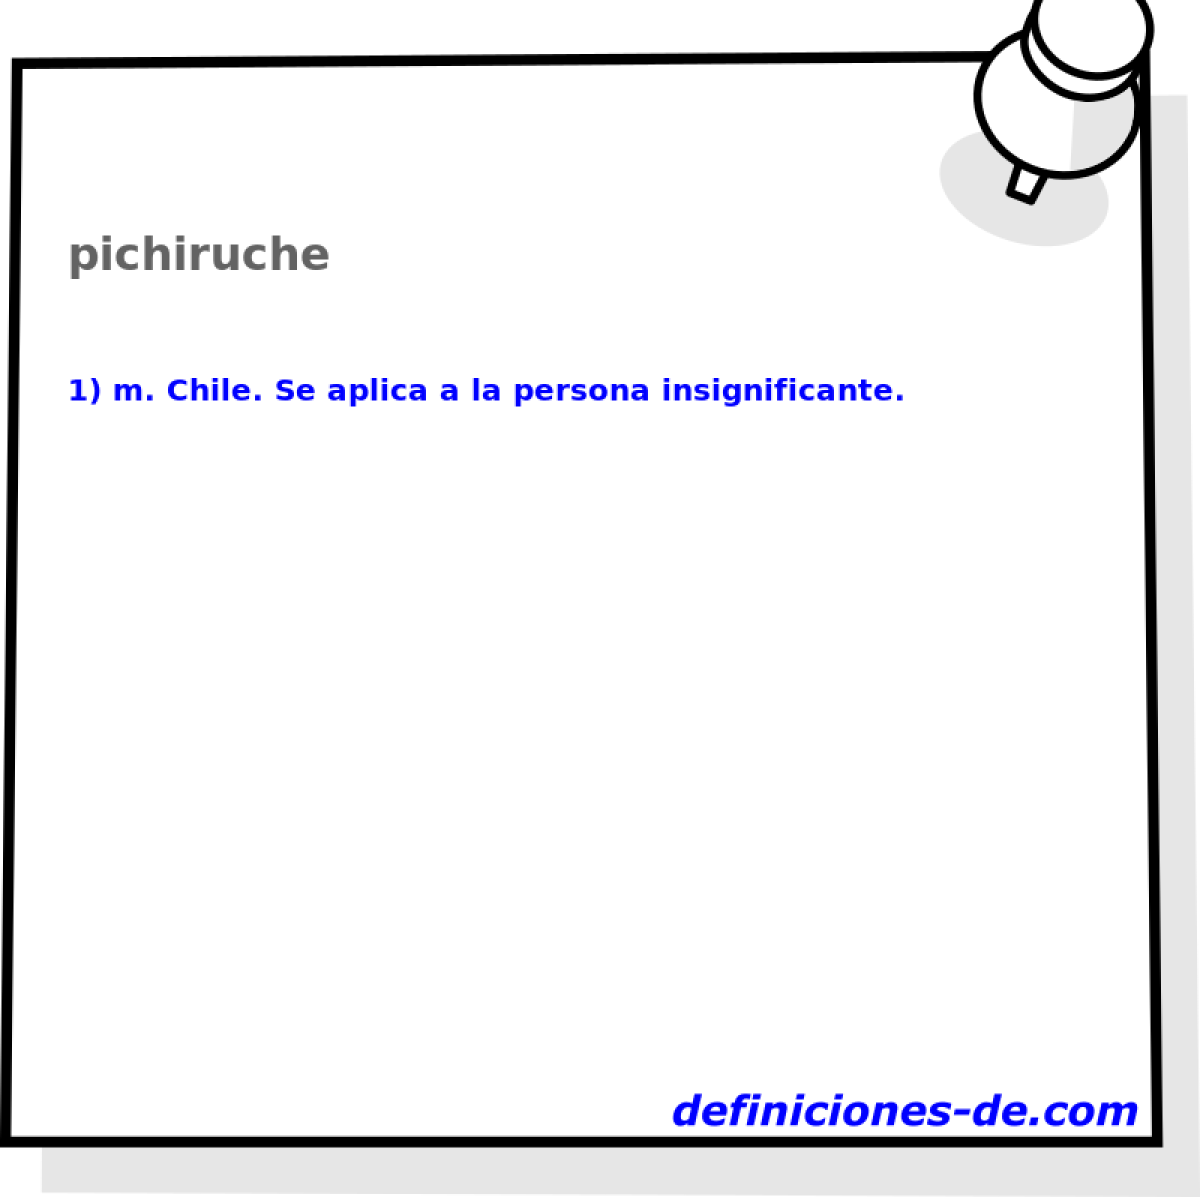 pichiruche 